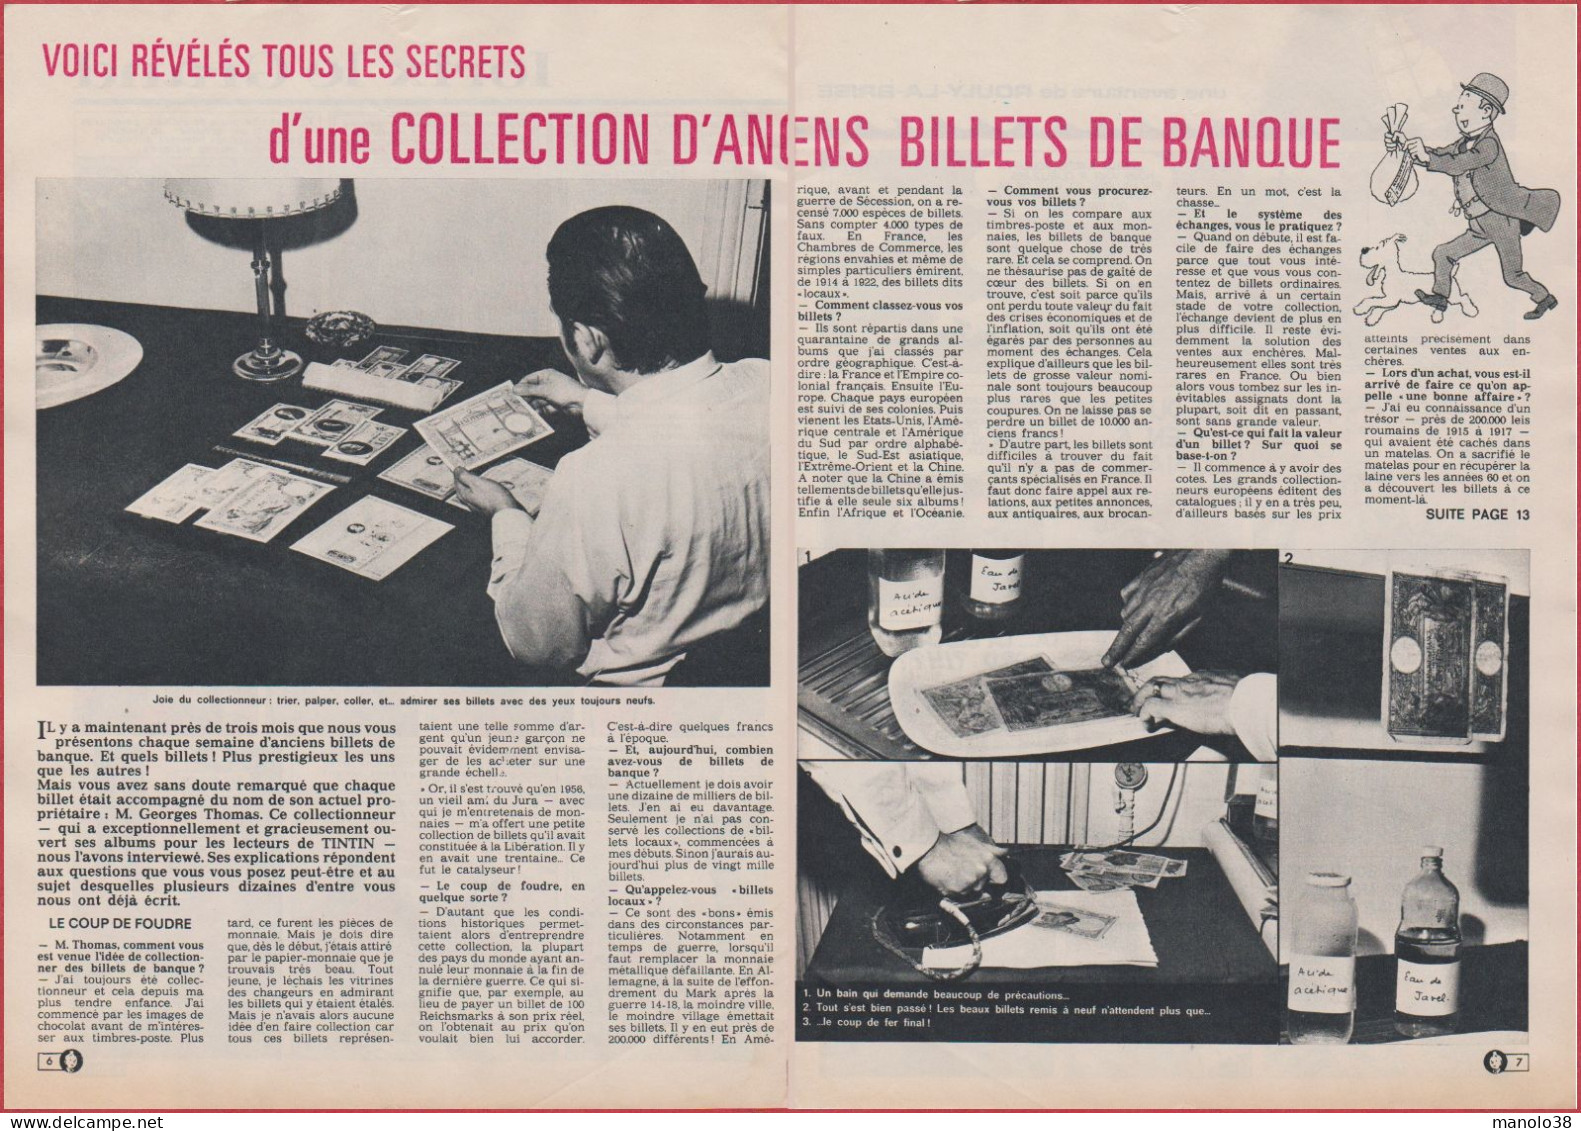 Les Secrets D'une Collection D'anciens Billets De Banque. Reportage. 1971. - Historical Documents